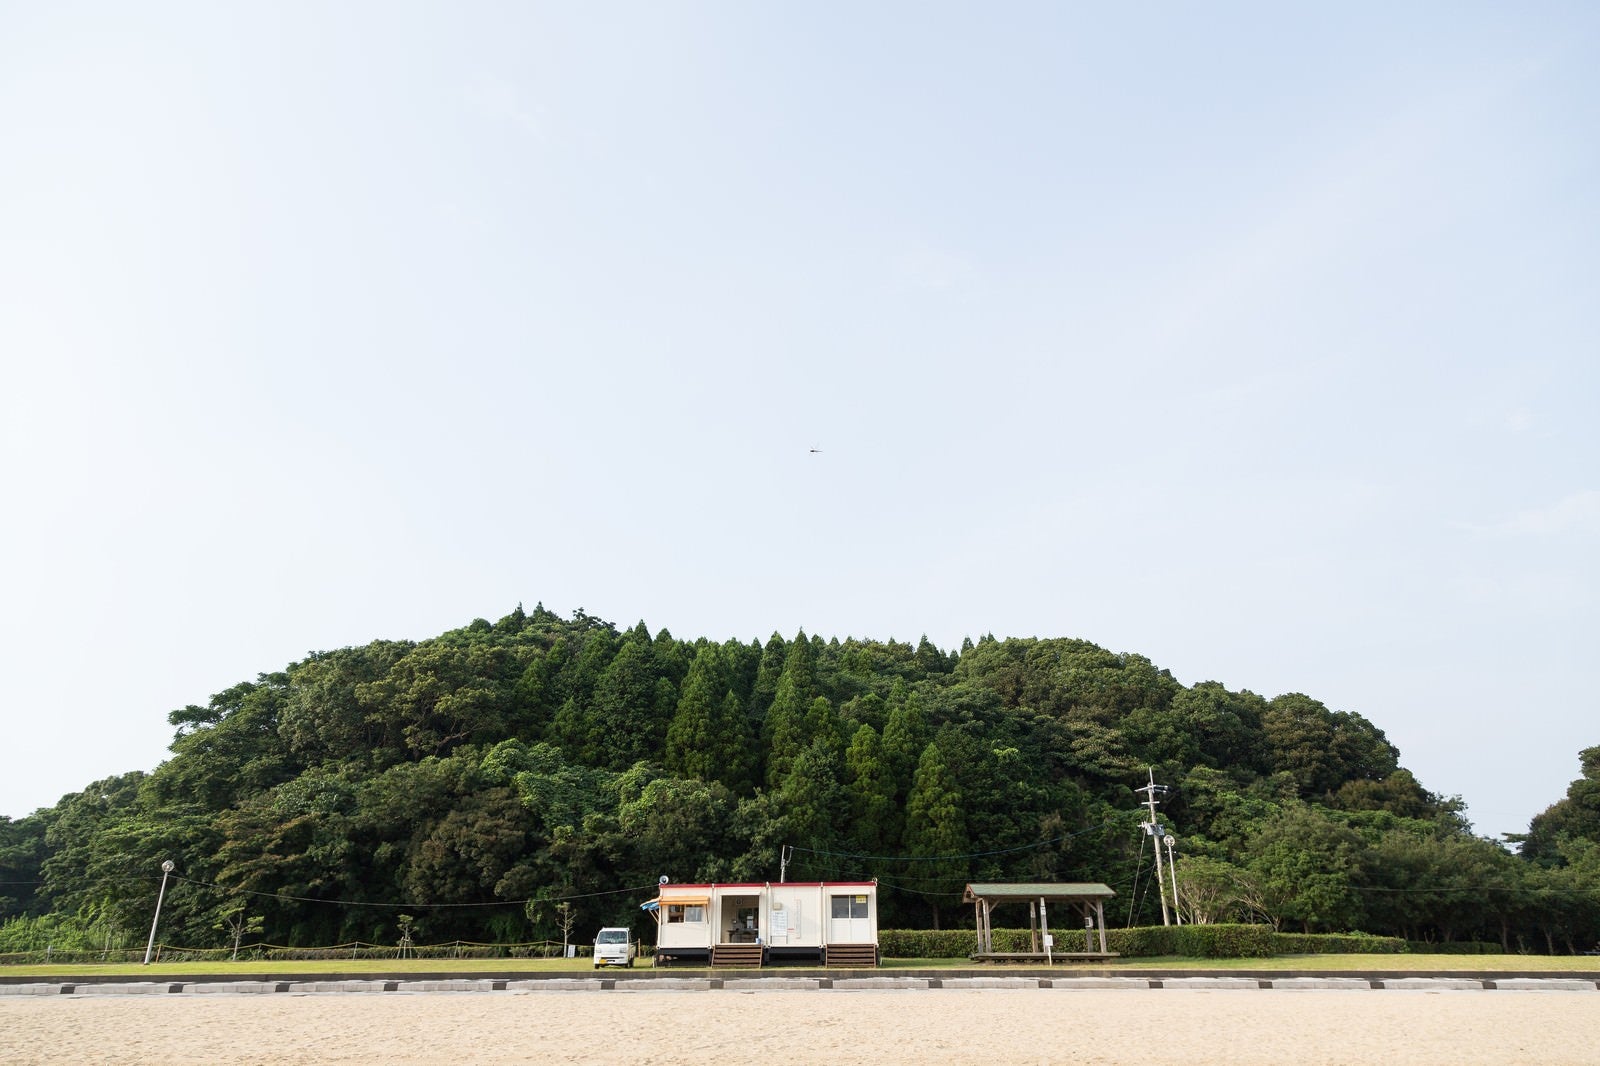 「イマリンビーチ(伊万里人工海浜公園)」の写真